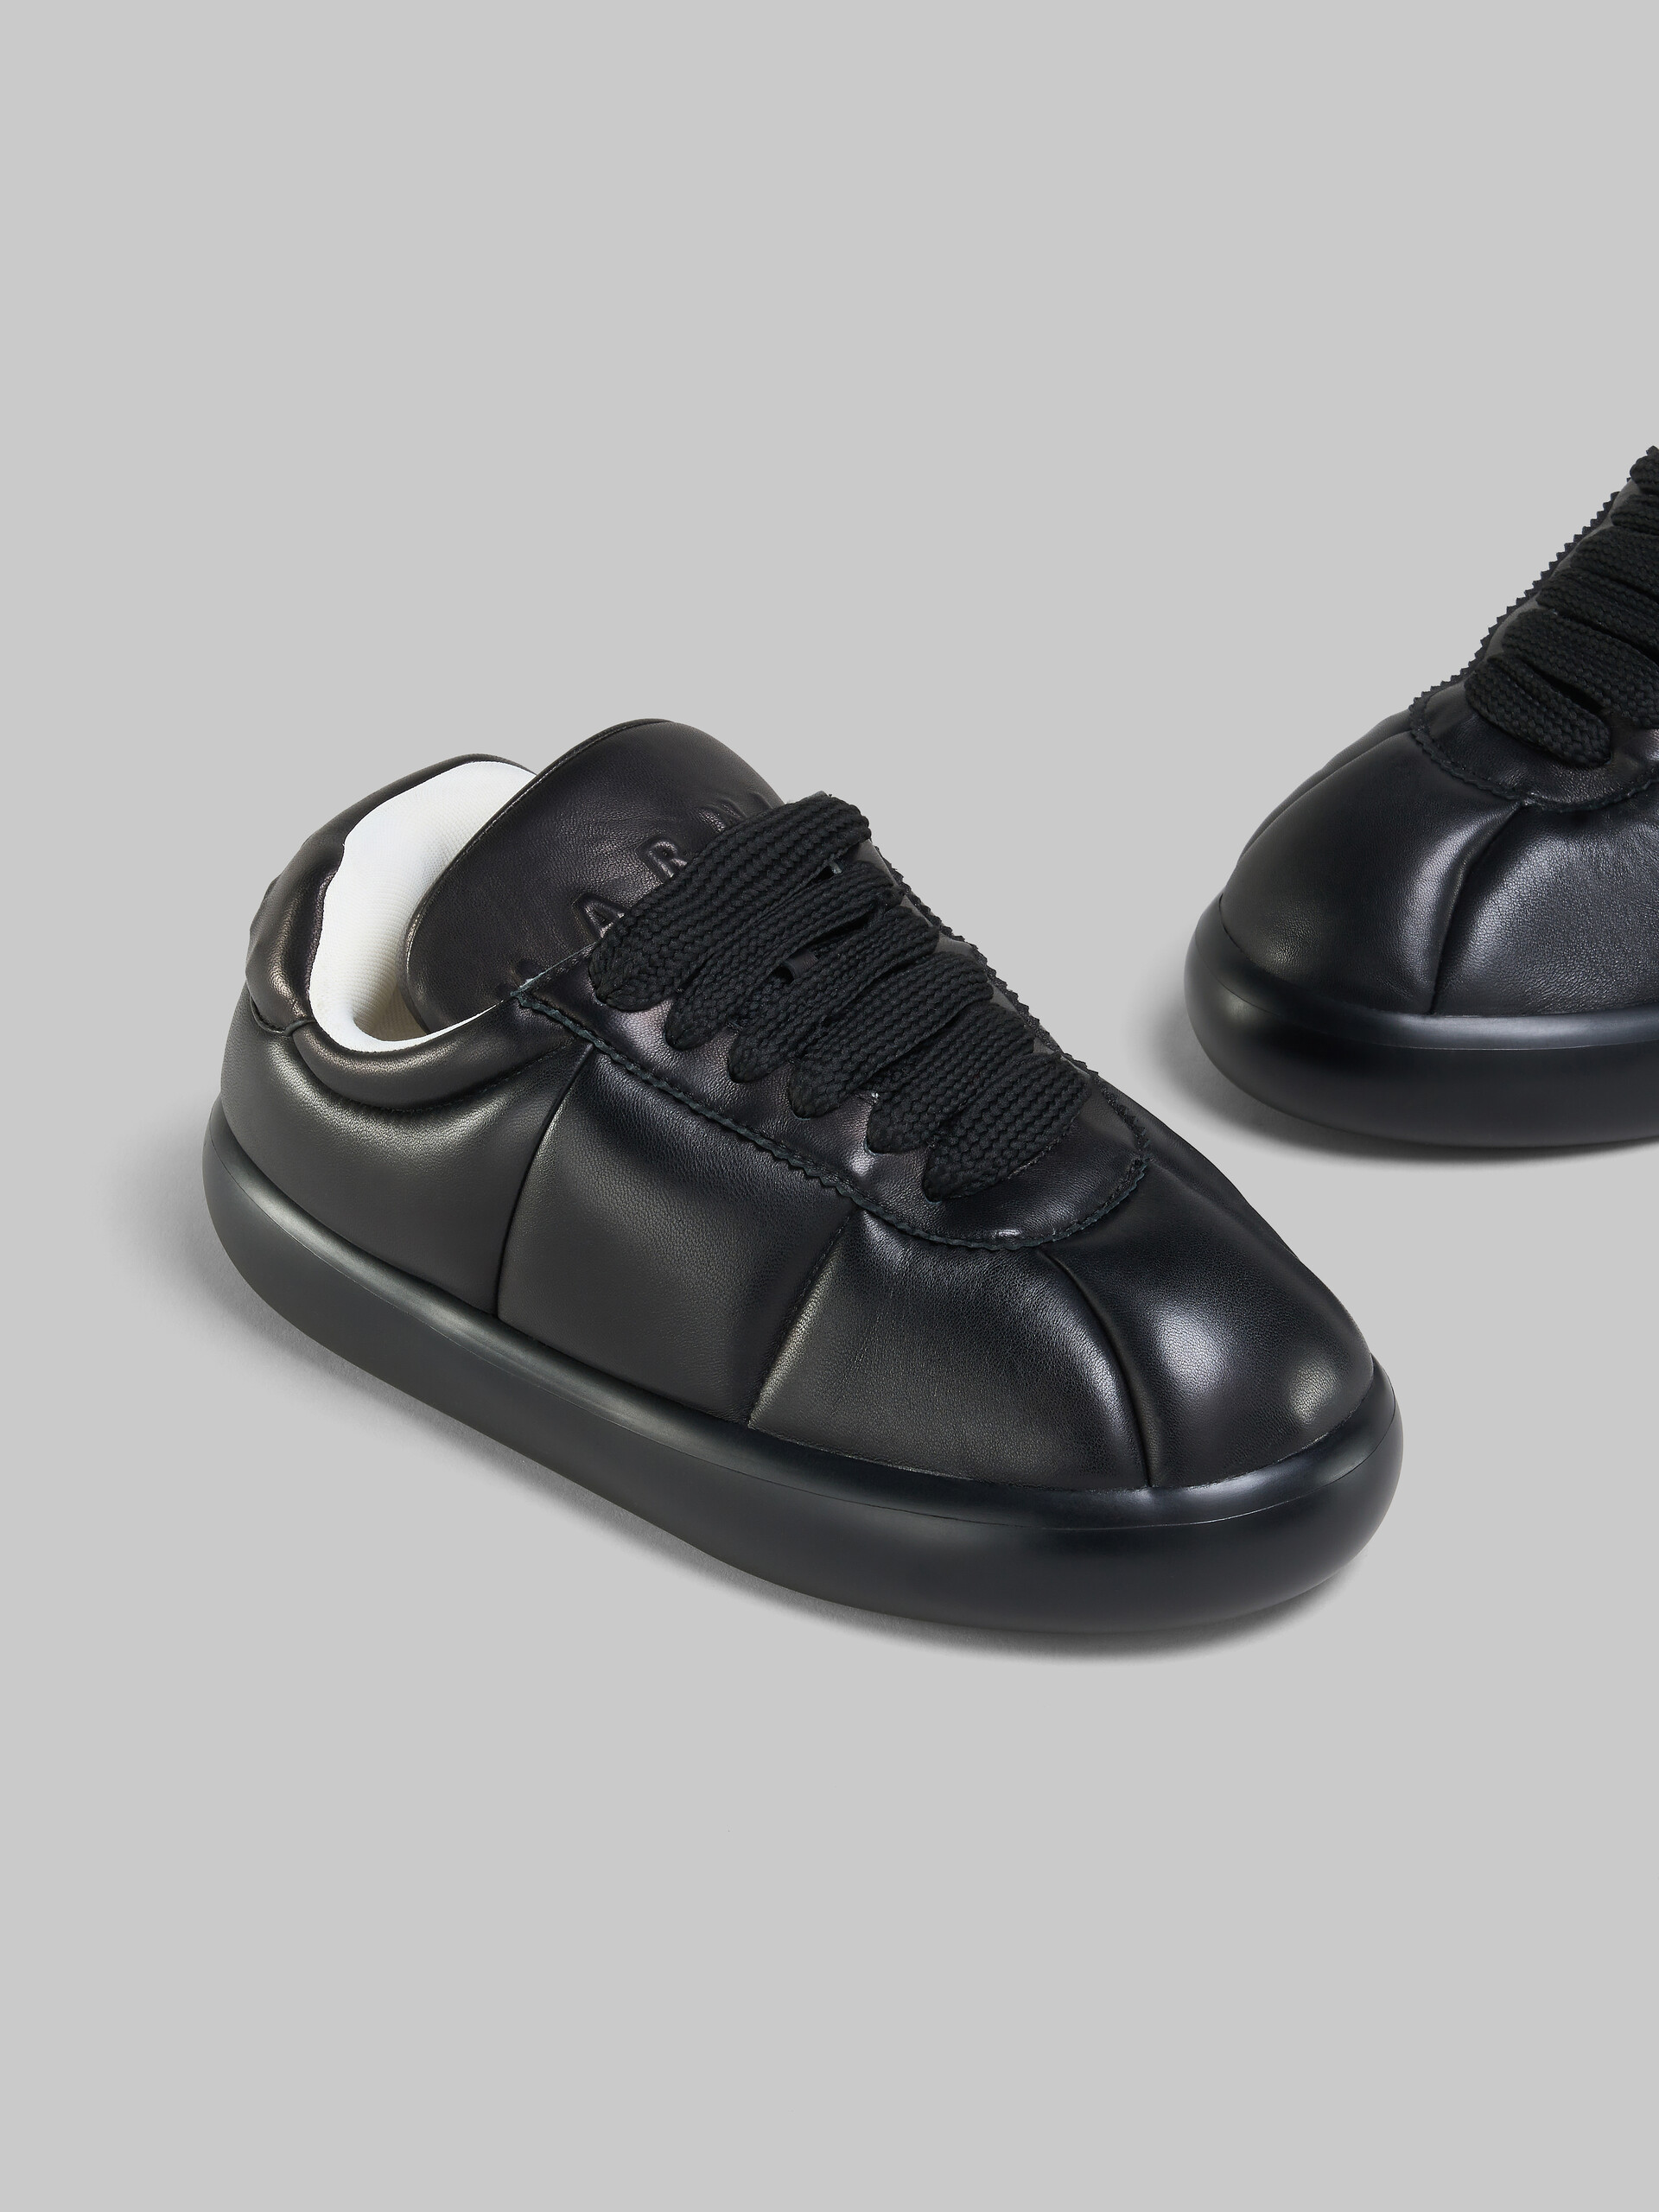 Sneaker BigFoot 2.0 in pelle nera - Sneakers - Image 5